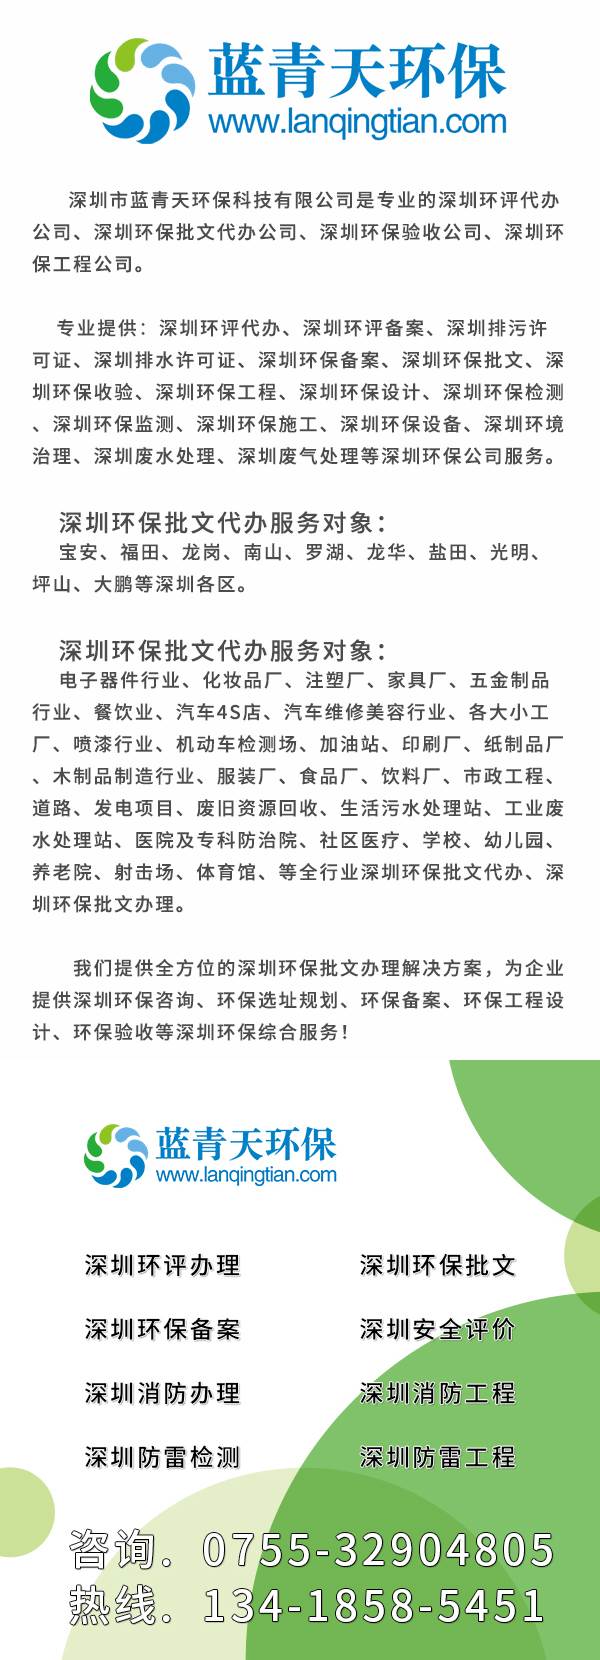 深圳布吉加工厂环评办理如何办理,深圳龙岗加工厂办理环保批文需要哪些流程